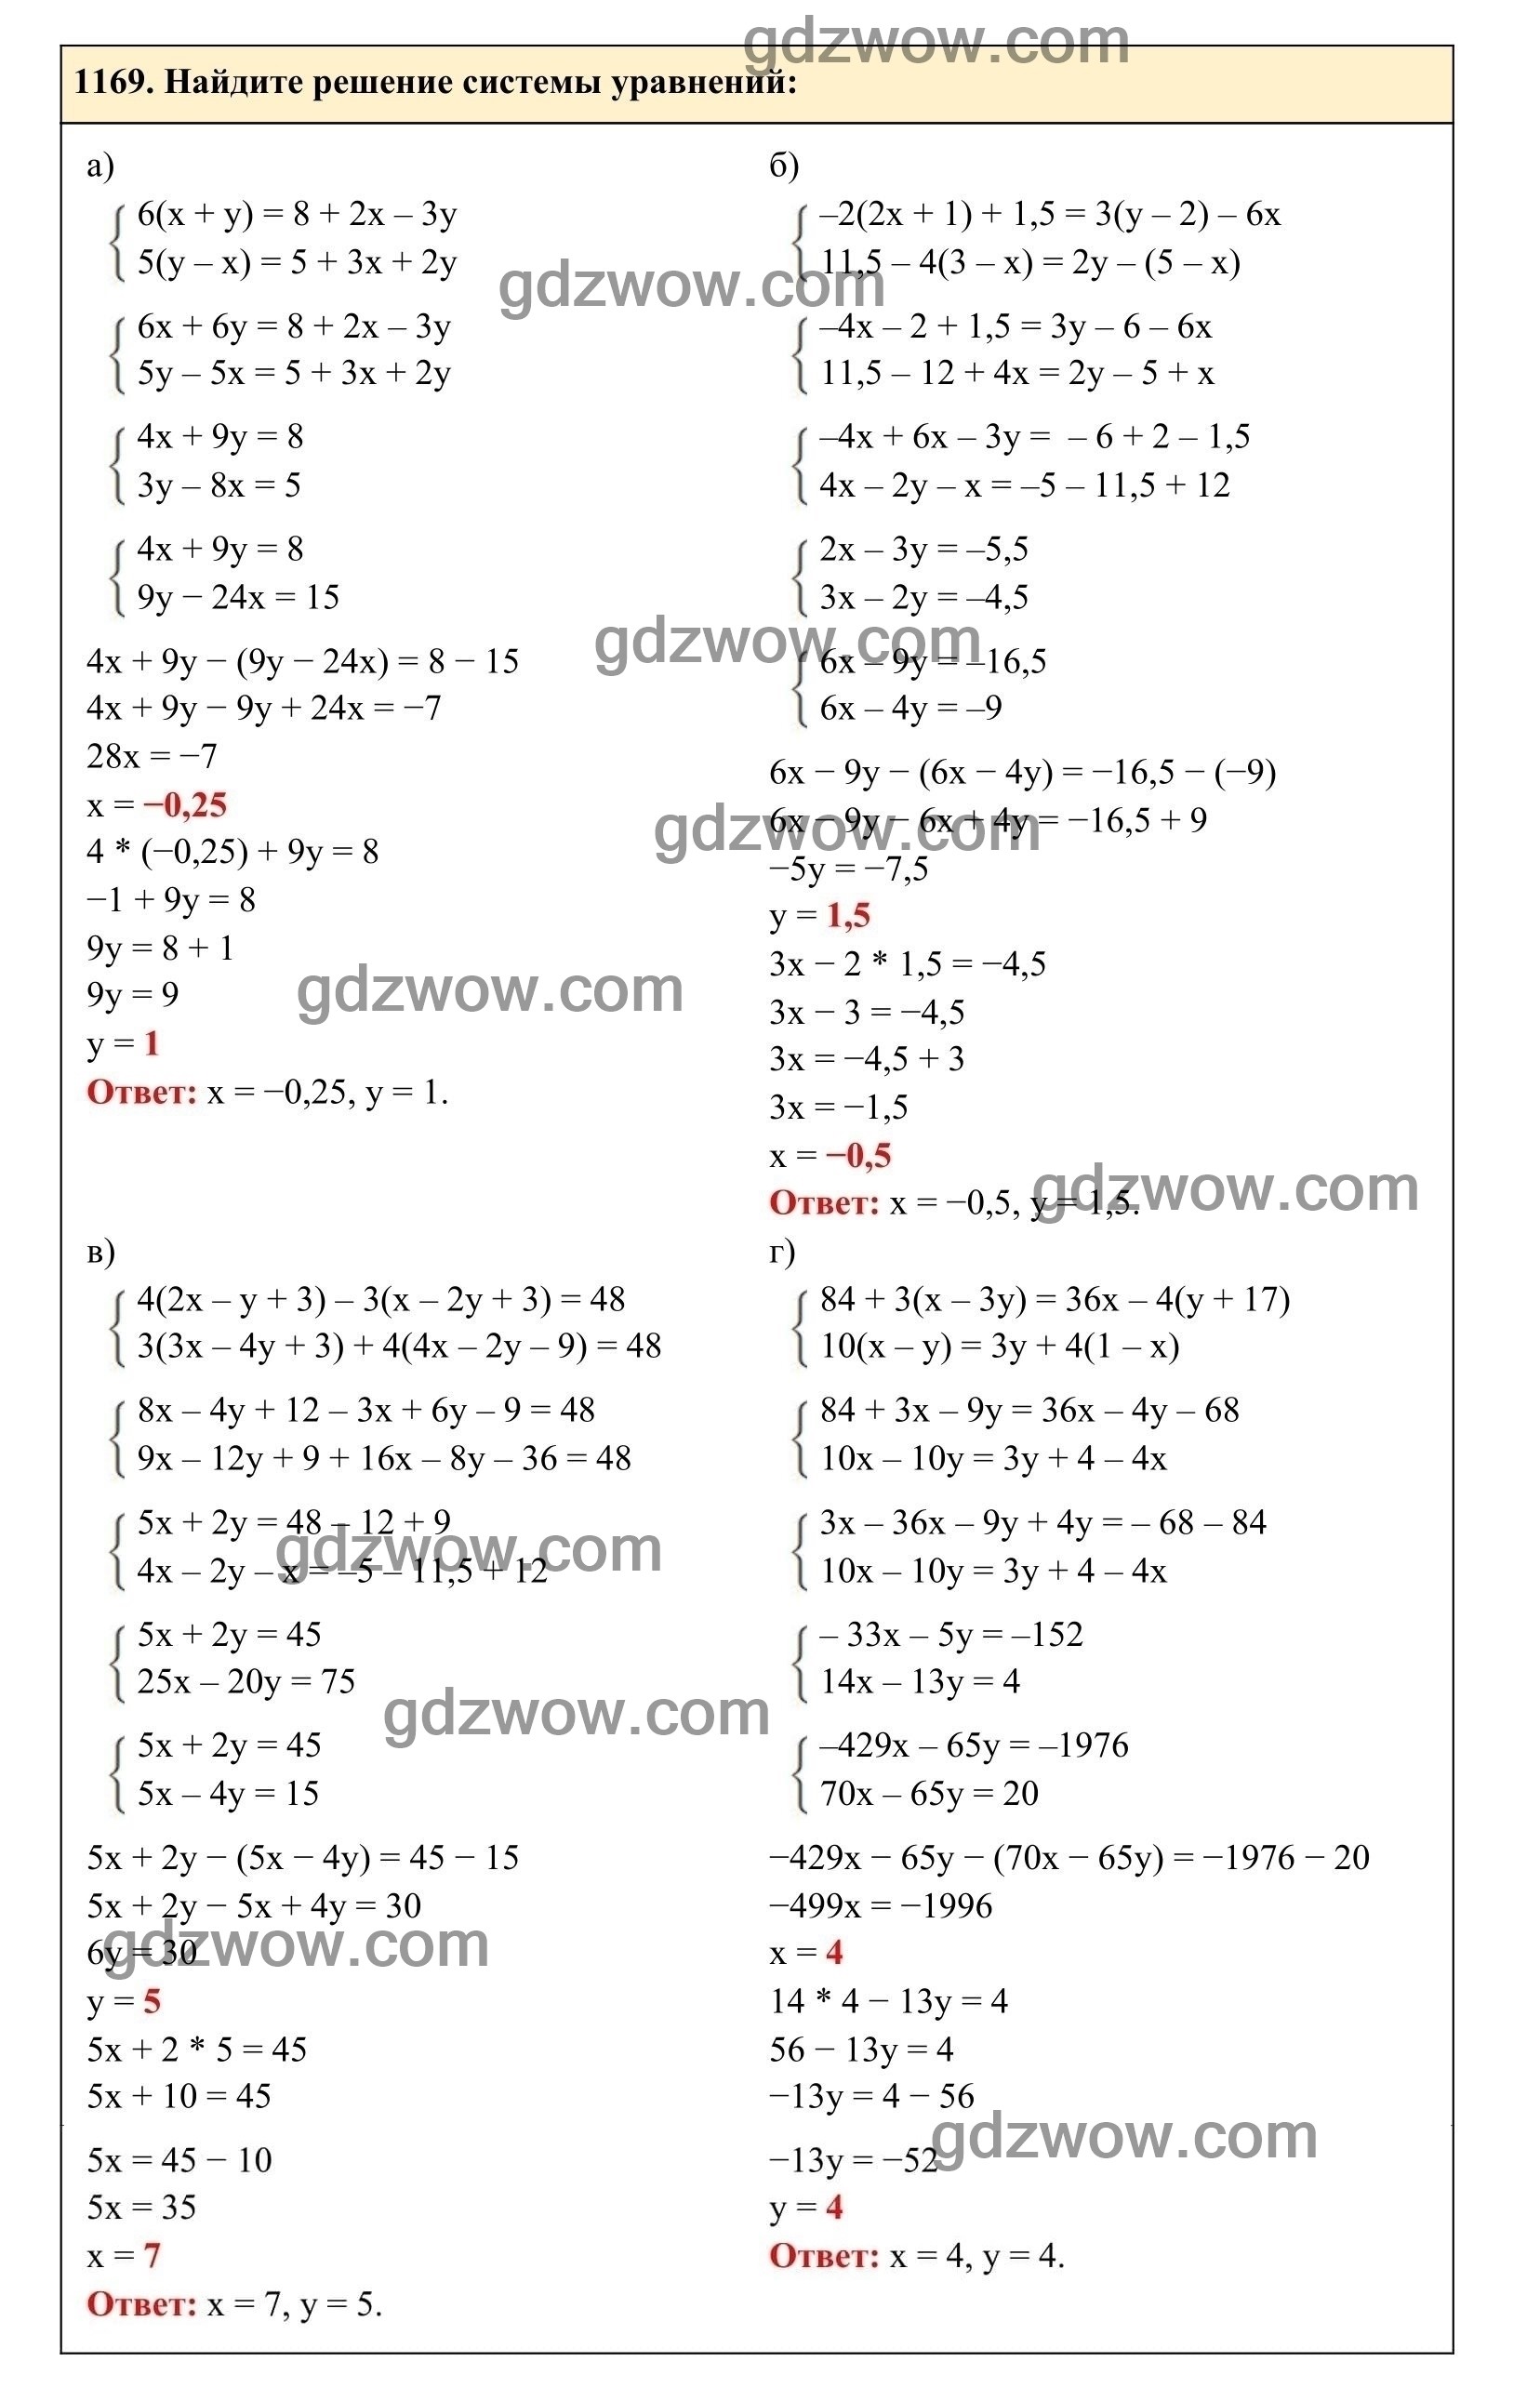 Упражнение 1169 - ГДЗ по Алгебре 7 класс Учебник Макарычев (решебник) - GDZwow